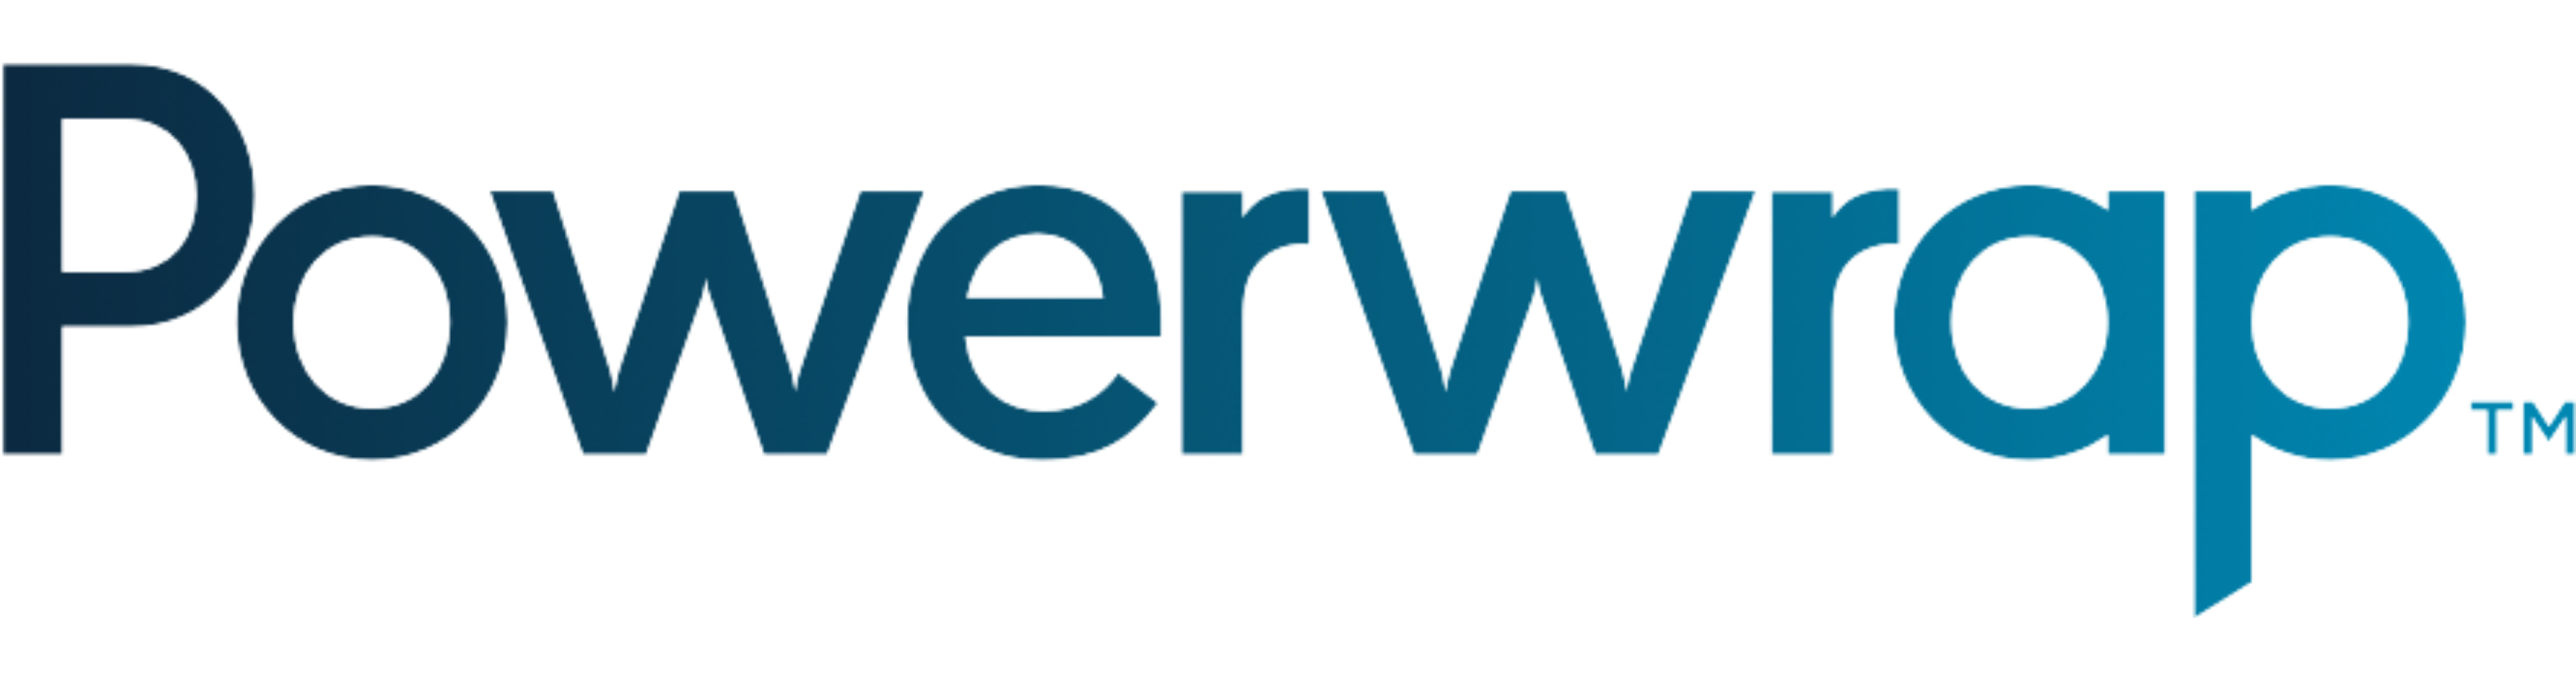 Powerwrap logo